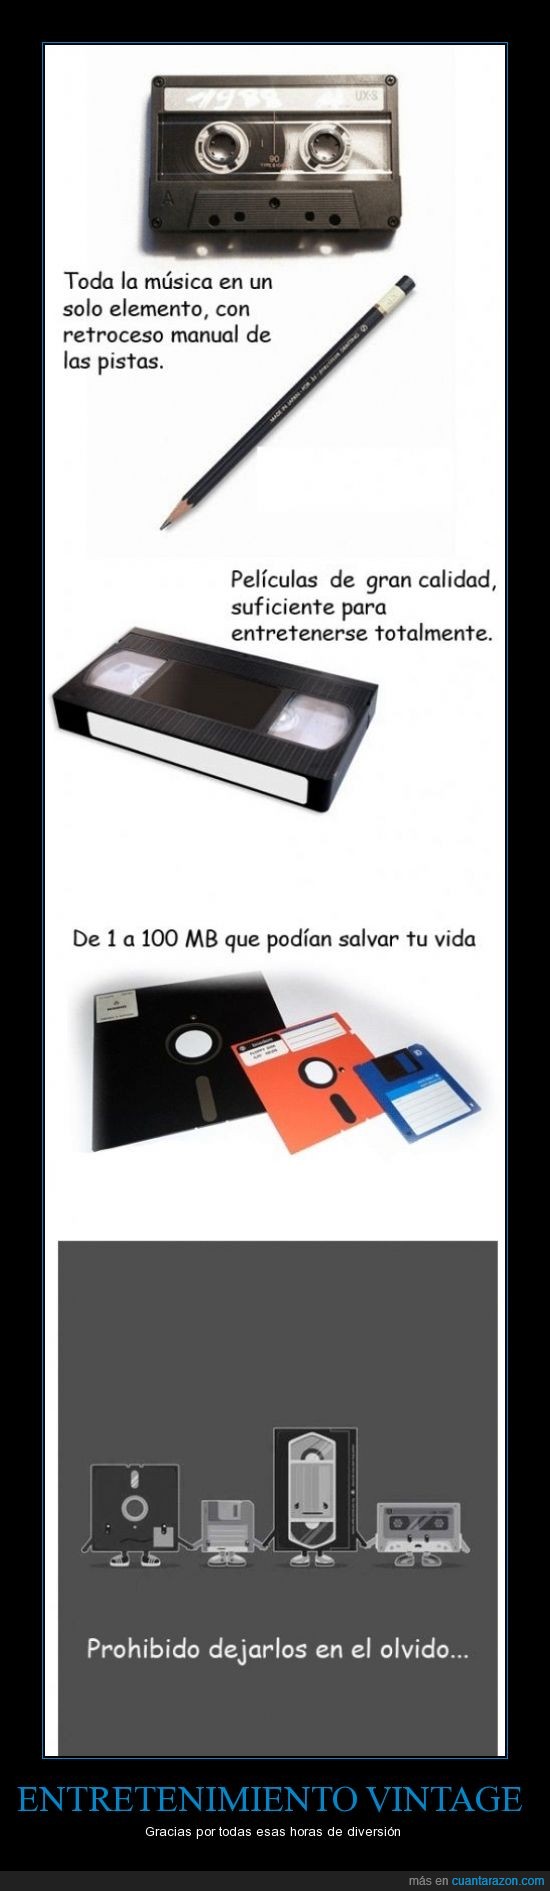 caset,disquet,mb,musica,pelicula,vhs